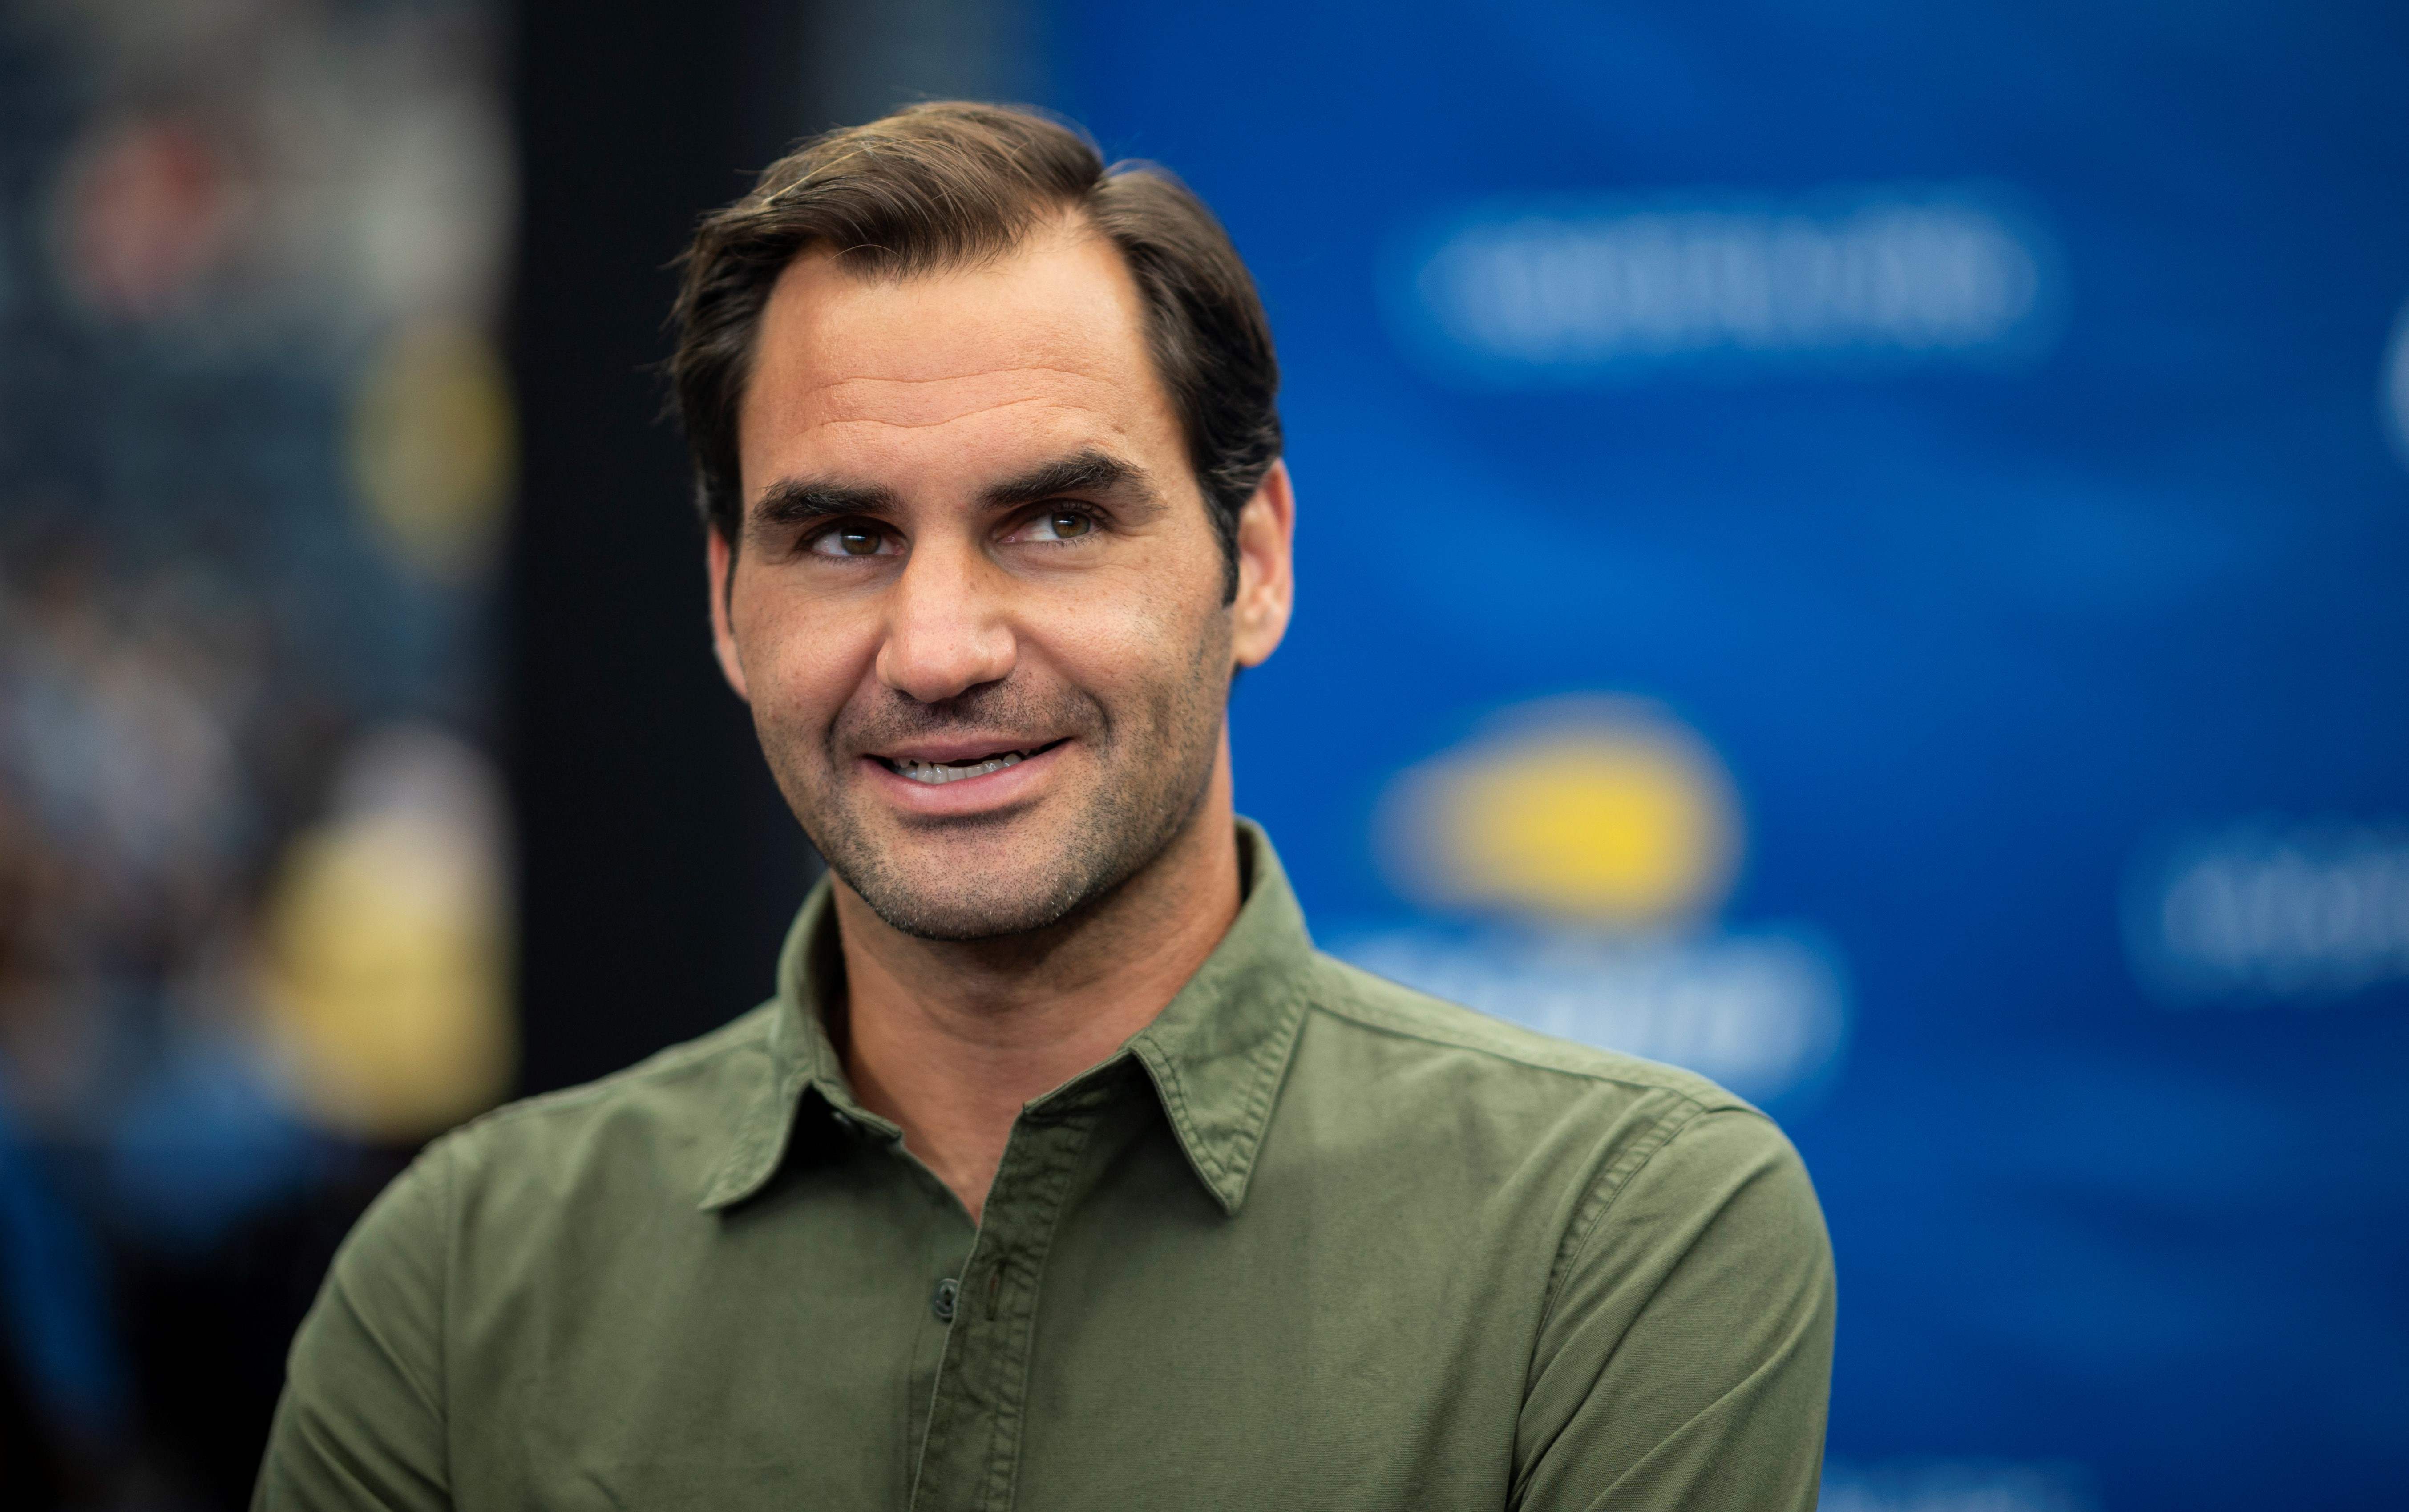 El tenista Roger Federer ayudará a sus compatriotas por los problemas económicos del Covid-19. (Foto Prensa Libre: AFP)